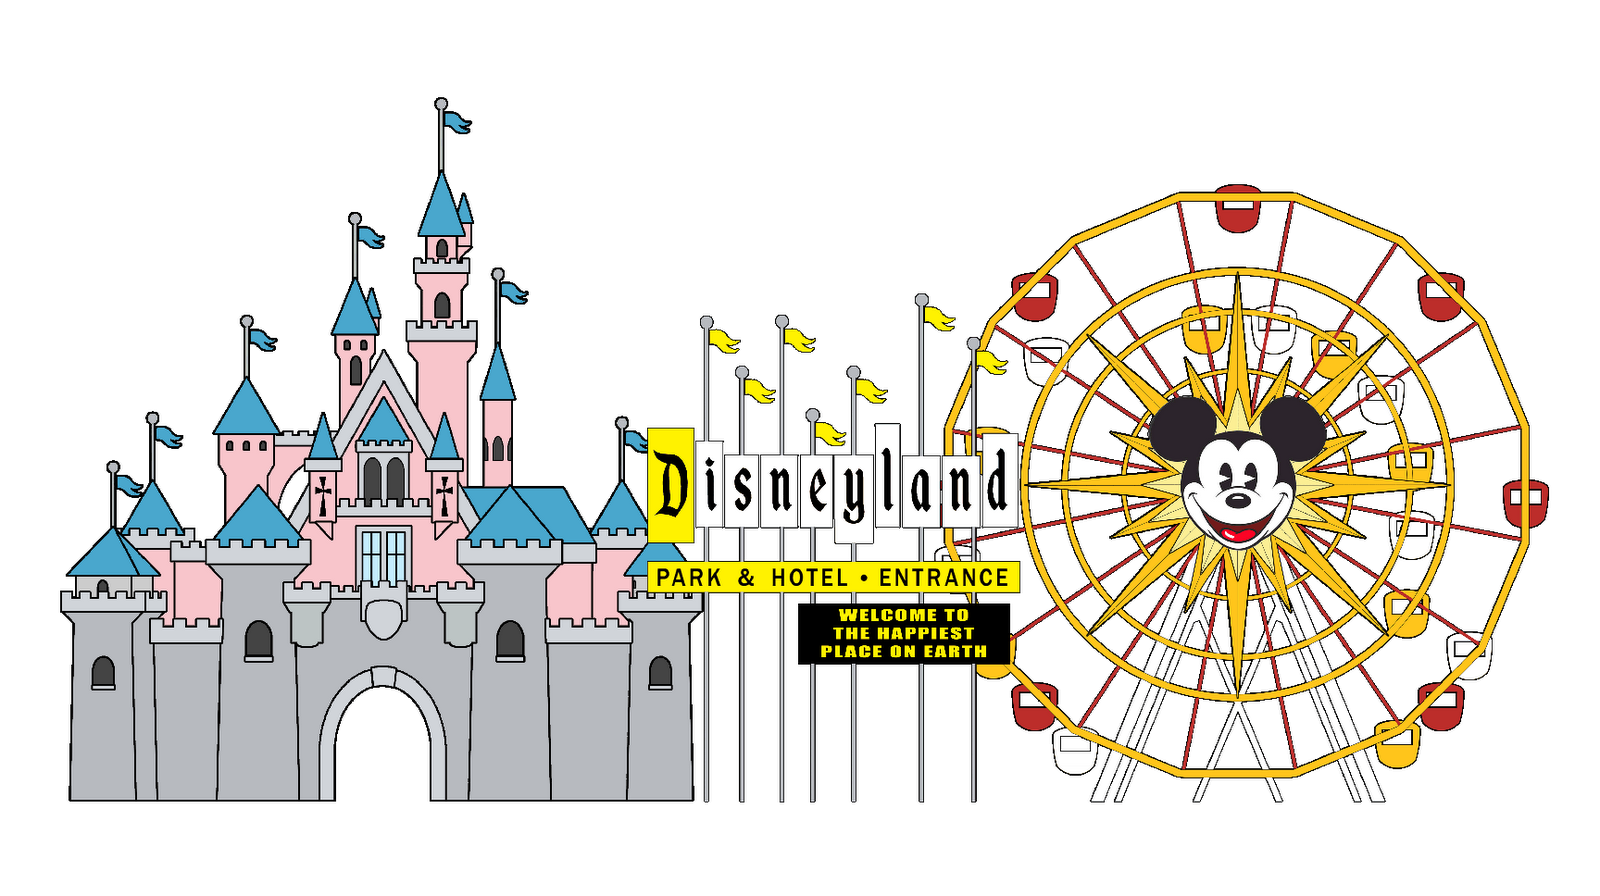 Disneyland California Re P Ort  The Disneyland California Report